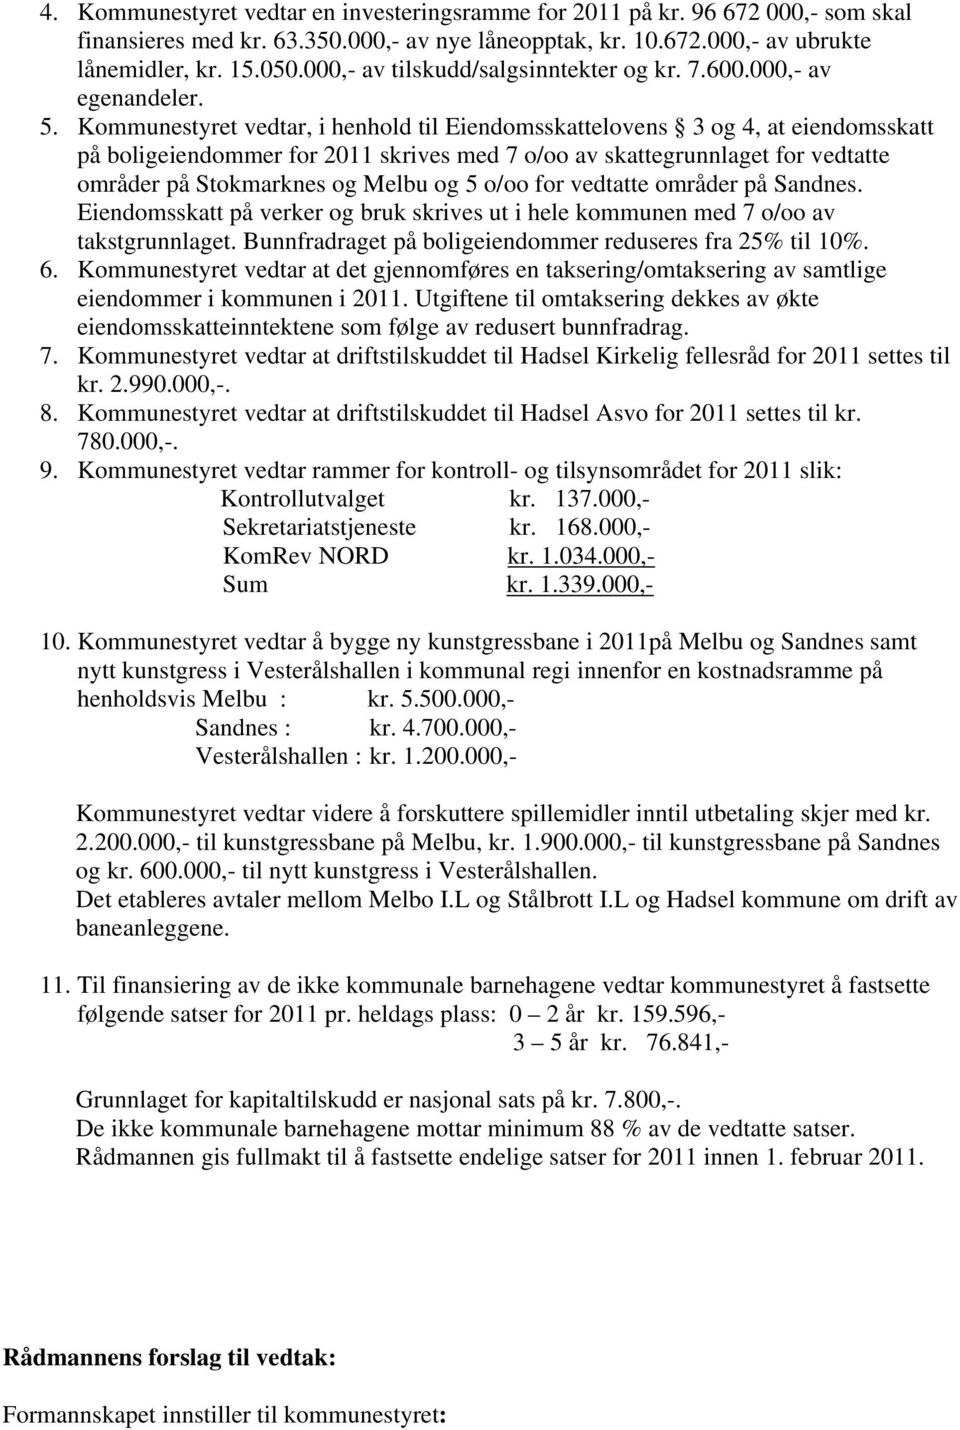 Kommunestyret vedtar, i henhold til Eiendomsskattelovens 3 og 4, at eiendomsskatt på boligeiendommer for 2011 skrives med 7 o/oo av skattegrunnlaget for vedtatte områder på Stokmarknes og Melbu og 5